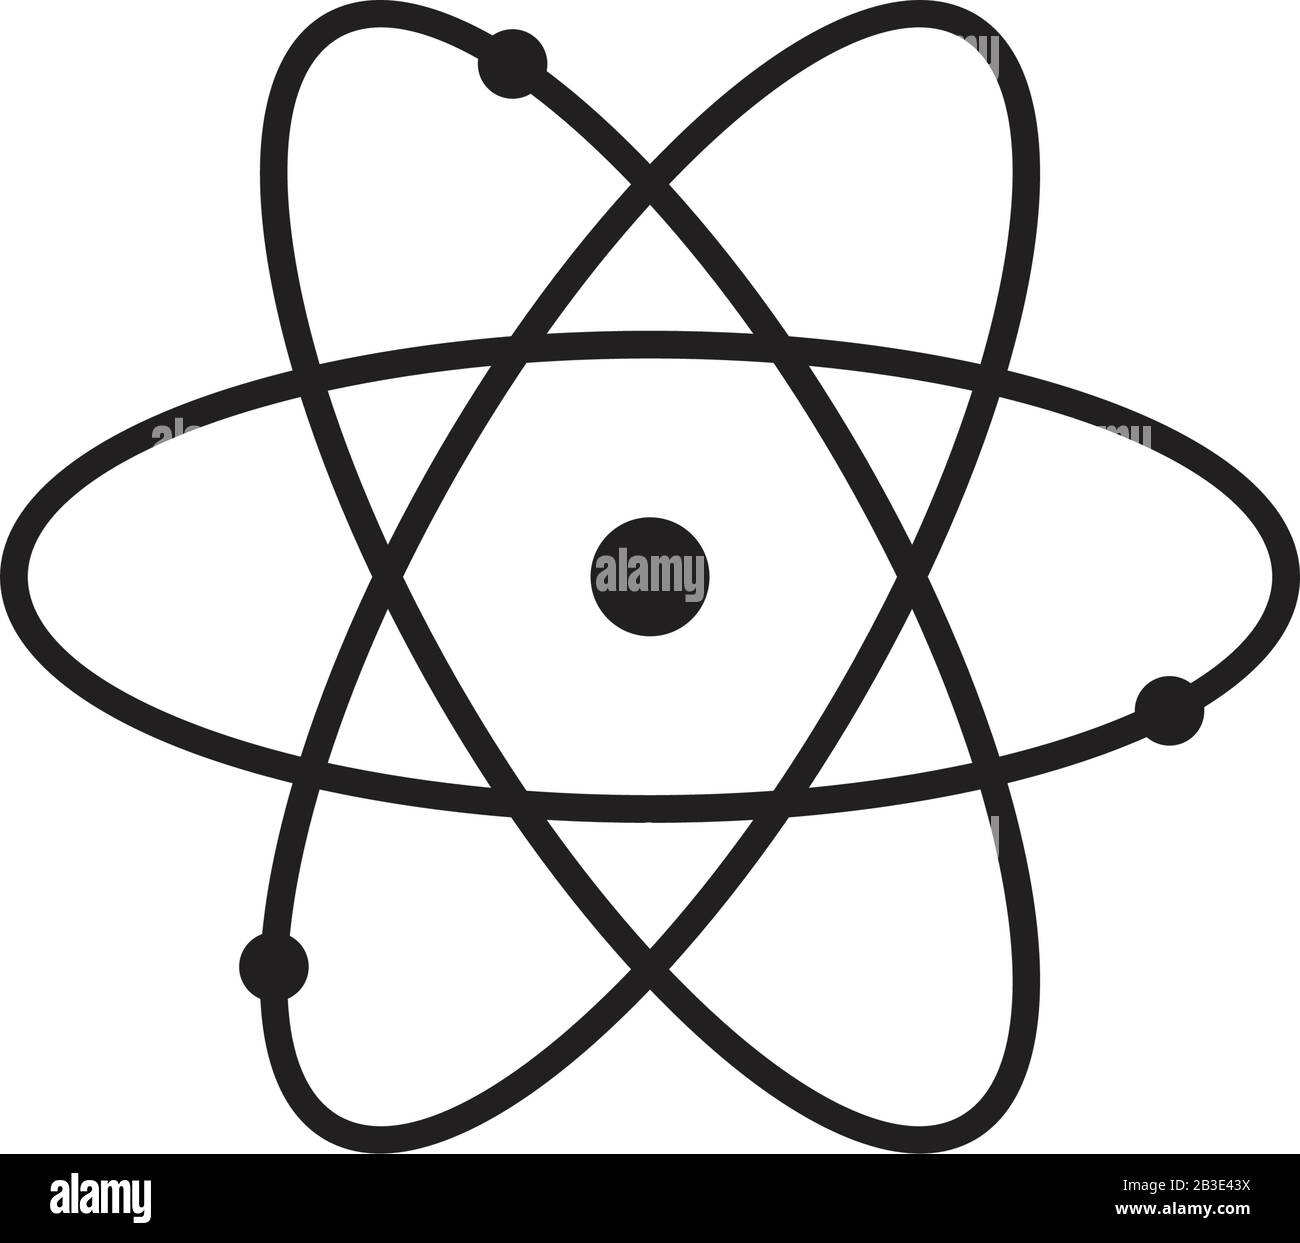 Modèle d'icône de signe Atom couleur noire modifiable. Symbole d'icône de signe Atom illustration vectorielle plate pour la conception graphique et Web. Illustration de Vecteur